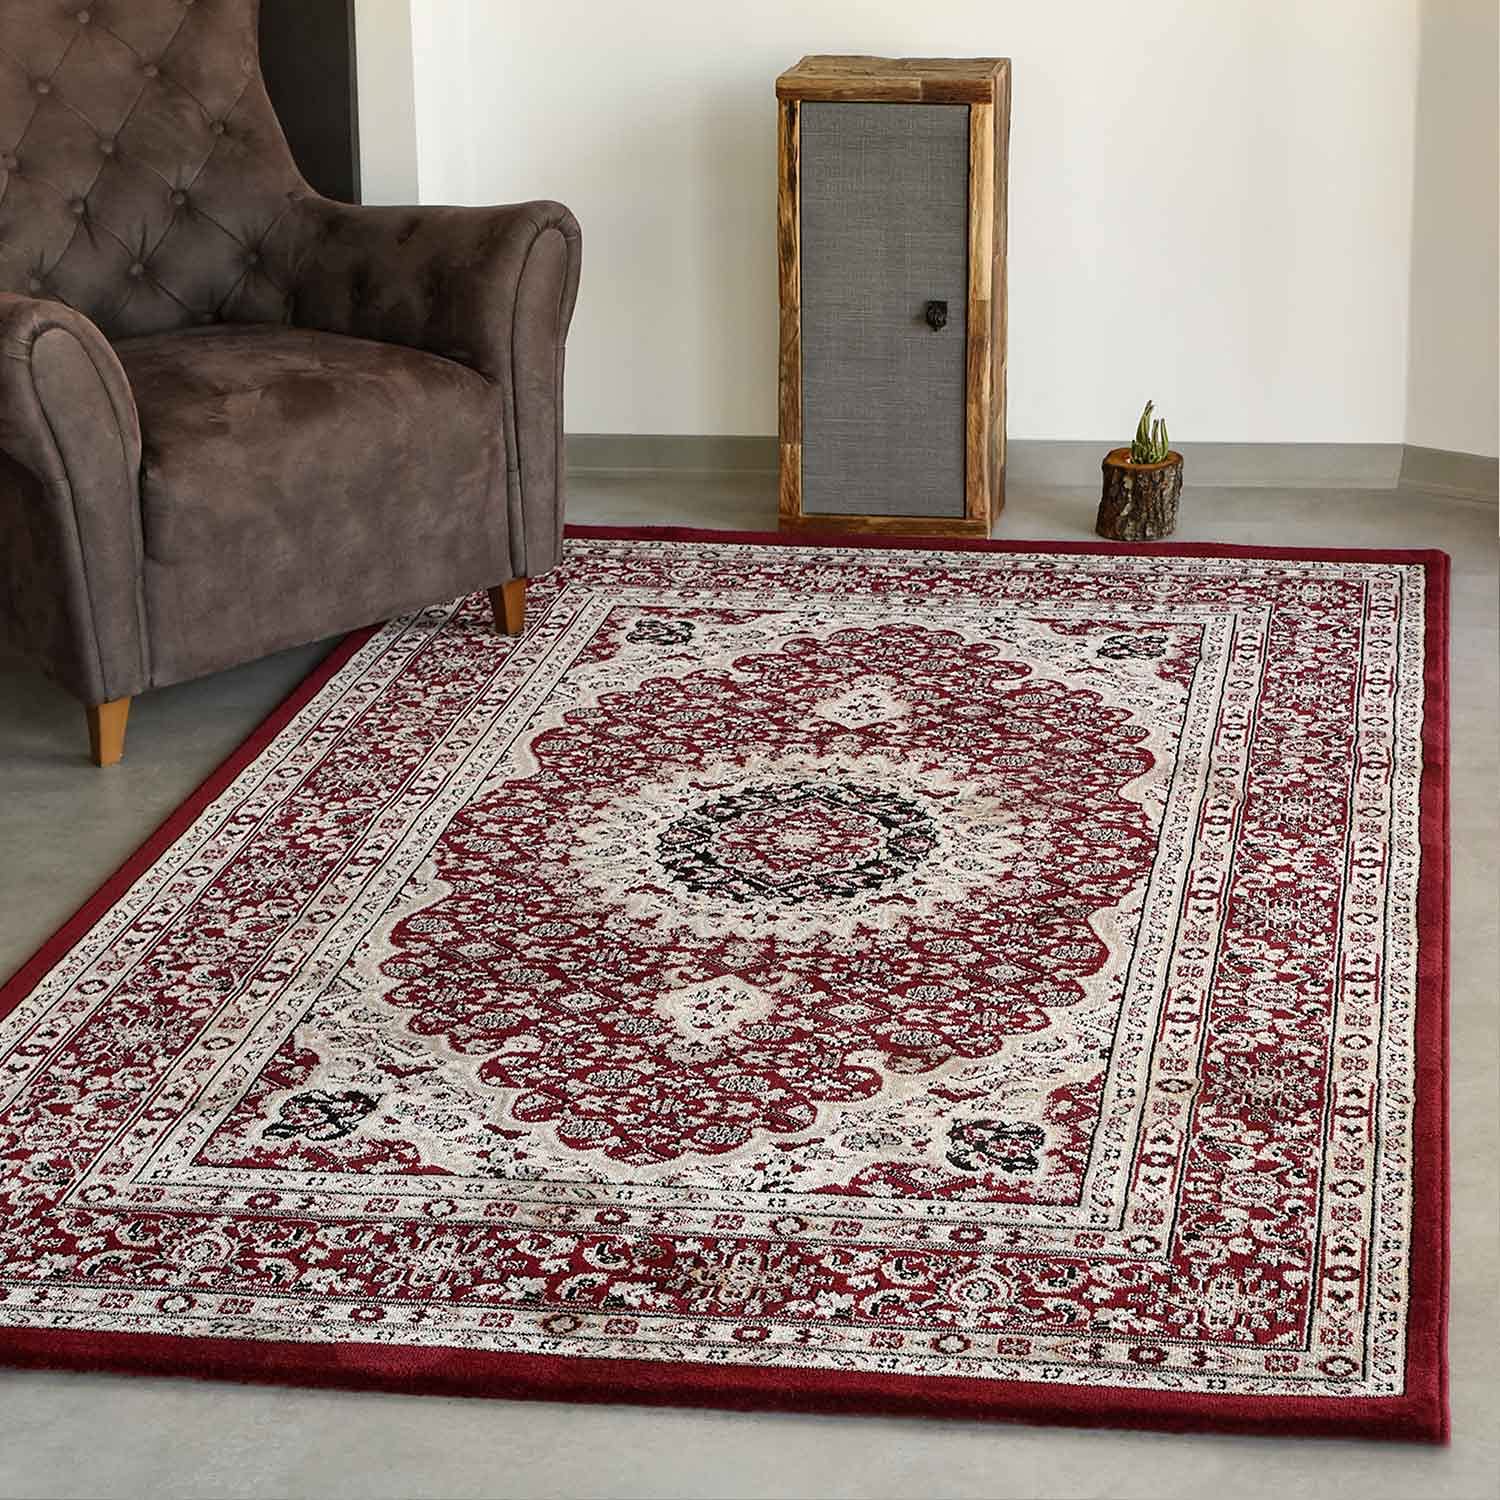 VIMODA Klassisch Orient Teppich dicht gewebt in Dunkel Rot, Maße:200 x 290 cm